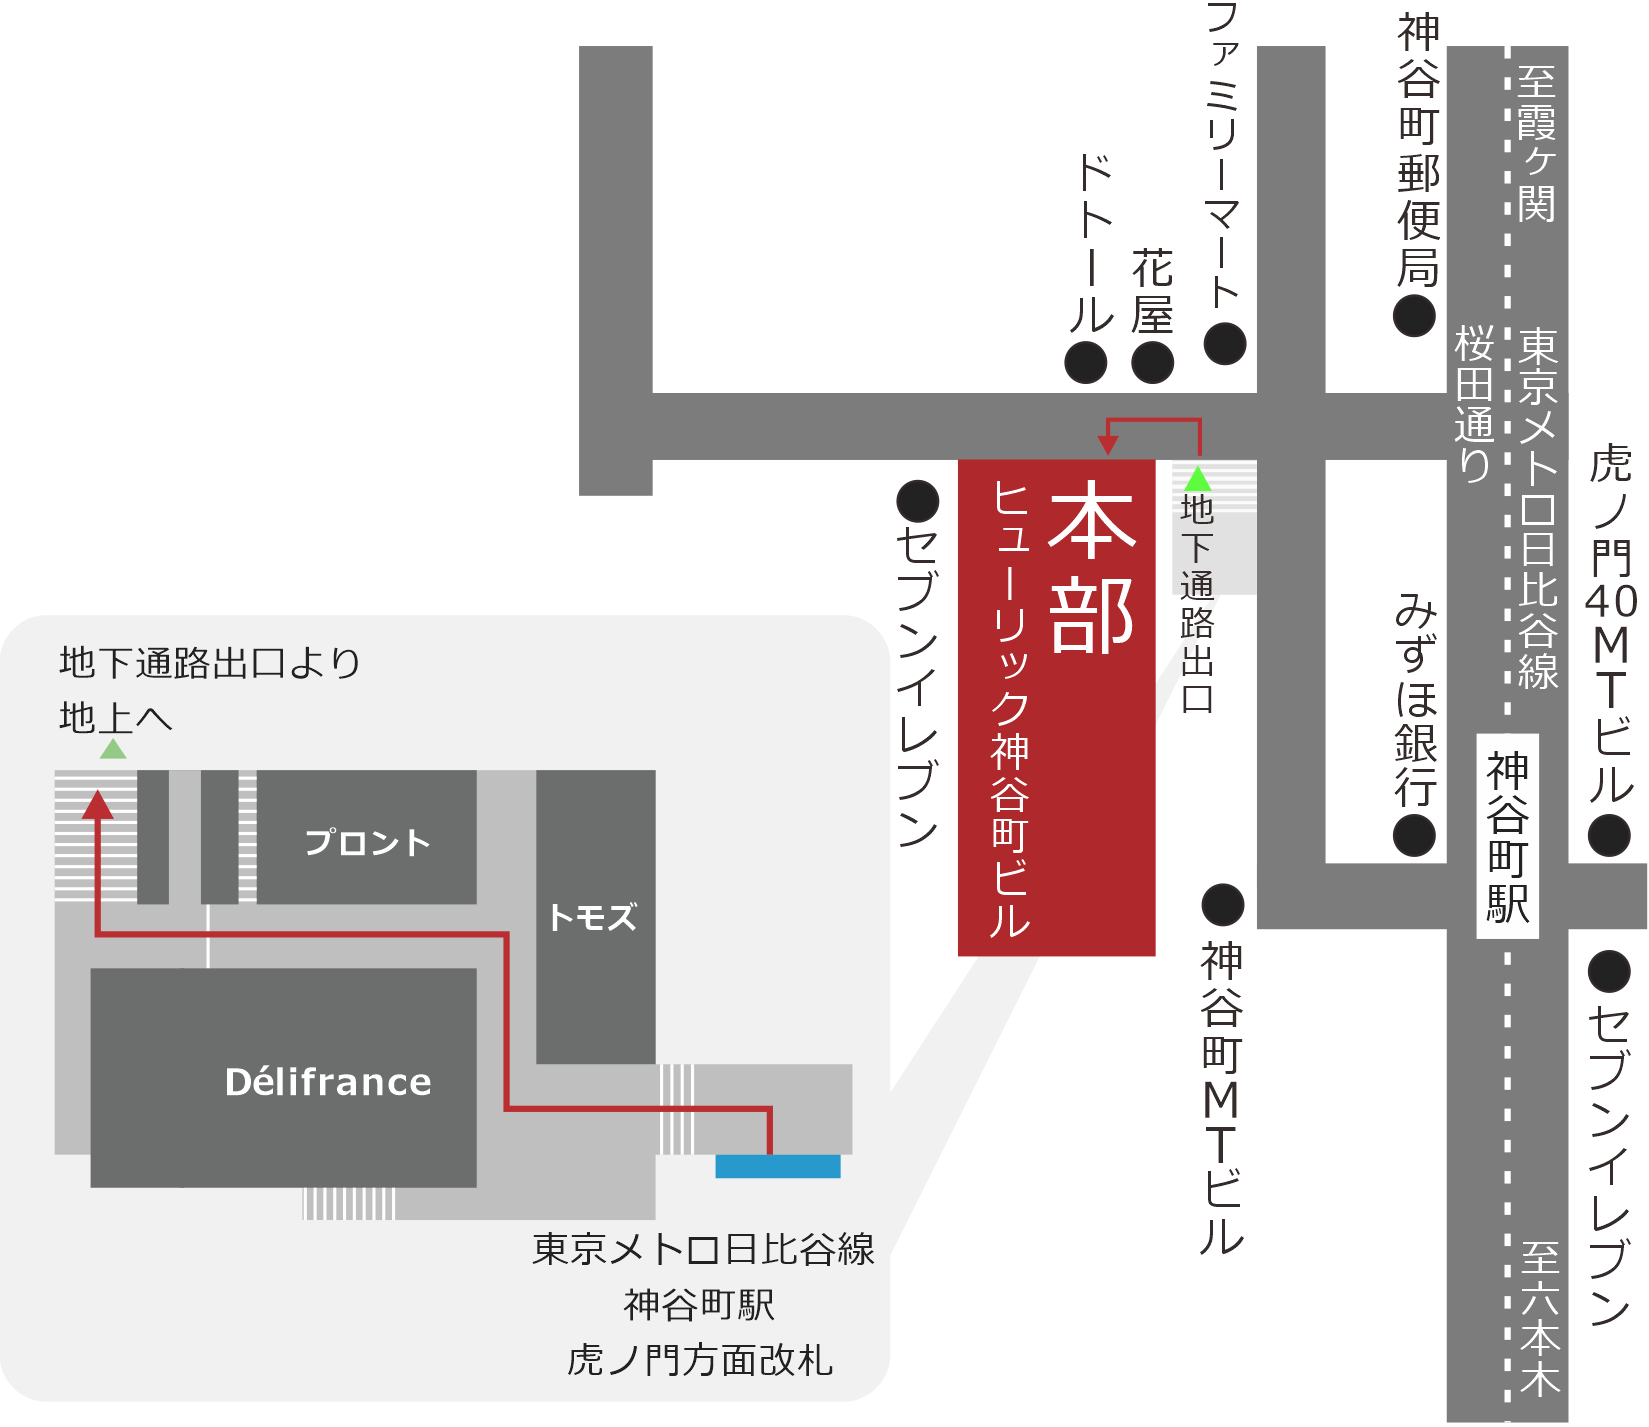 東京メトロ日比谷線神谷町駅の改札を出て左折、短い階段をのぼり、突き当りを右折、1本目の道を左折、短い階段を下り、突き当り右手のエスカレータを登り左折。歩道の左側にある2本の道を過ぎるとビル入り口の道に到着する。わからない時は電話番号03-3438-0211まで